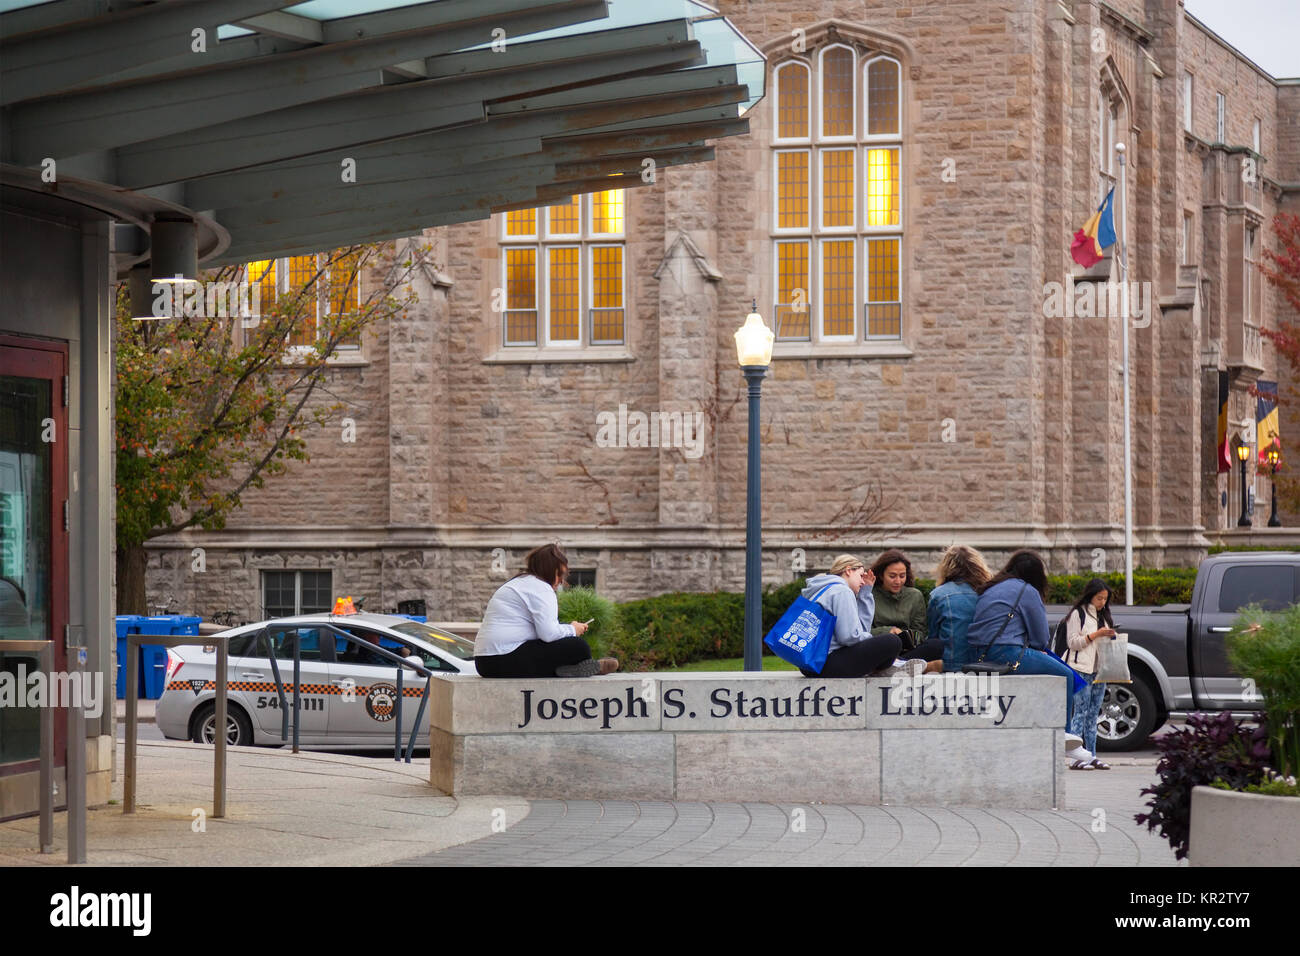 Gli studenti rilassante sul segno per il Giuseppe S. Stauffer biblioteca presso la Queen's University a Kingston a Kingston, Ontario, Canada. Foto Stock